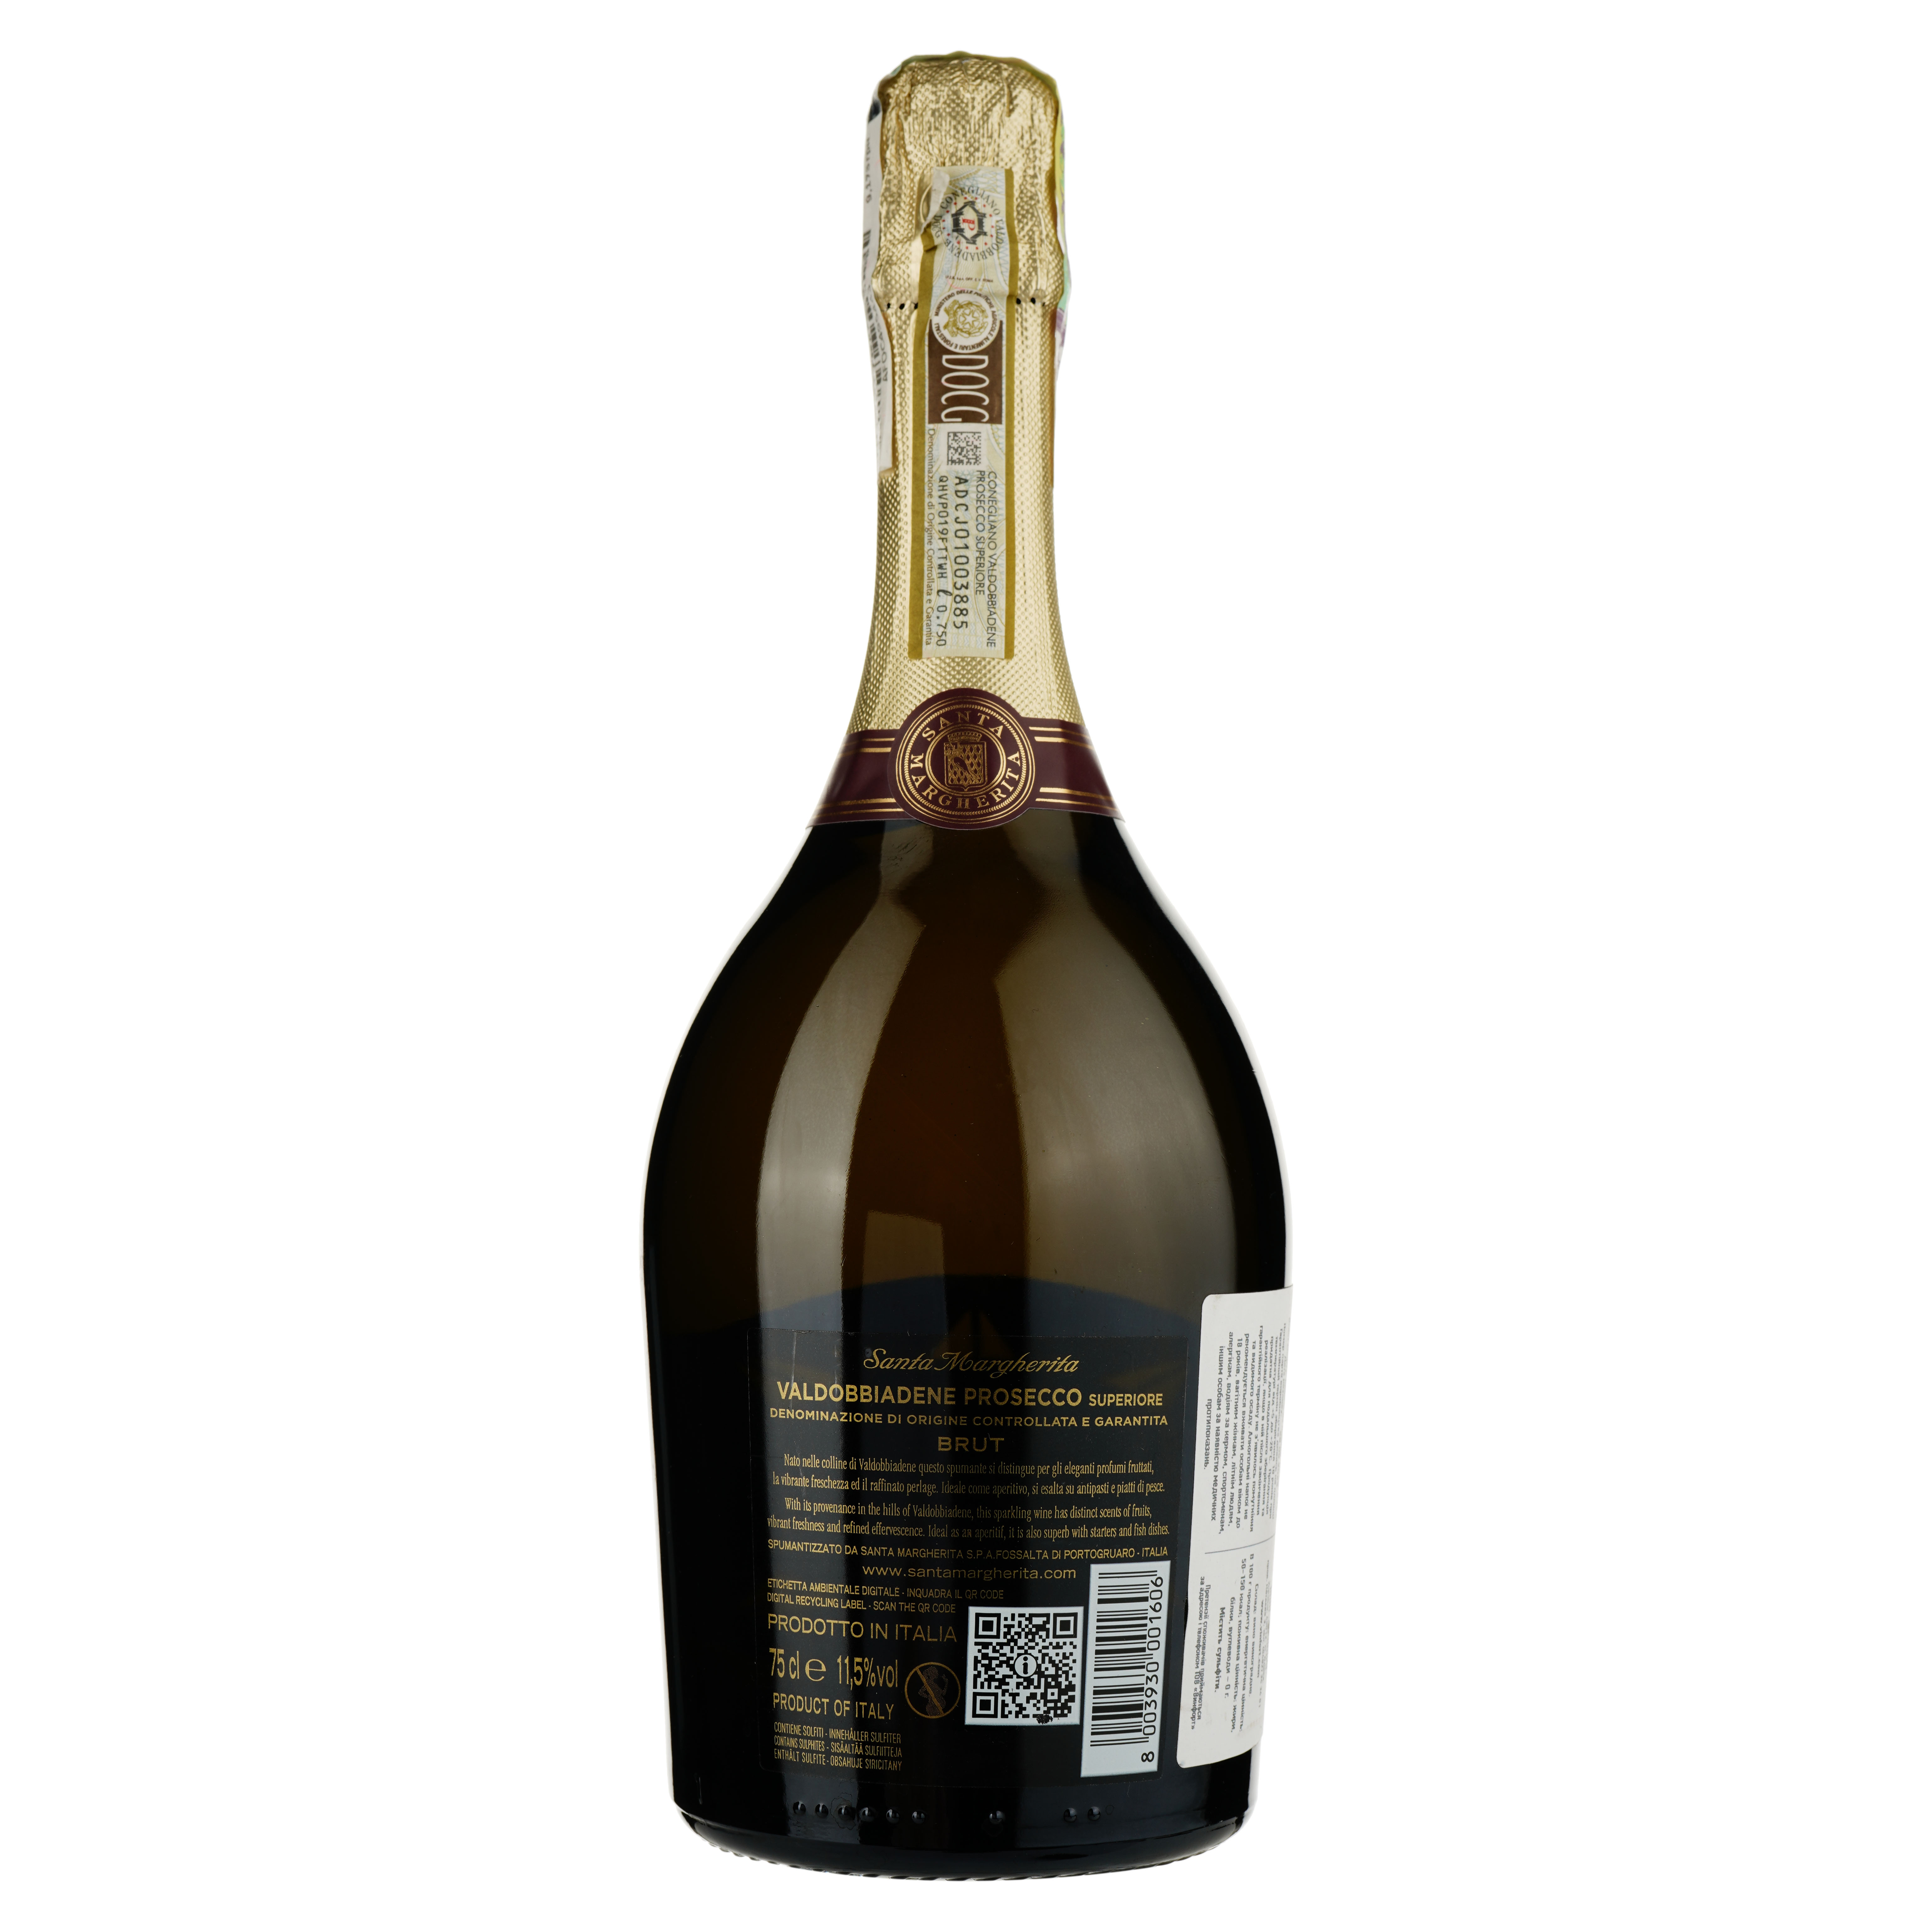 Ігристе вино Santa Margherita Valdobbiadene Prosecco Superire DOCG, біле, брют, 11,5%, 0,75 л - фото 2